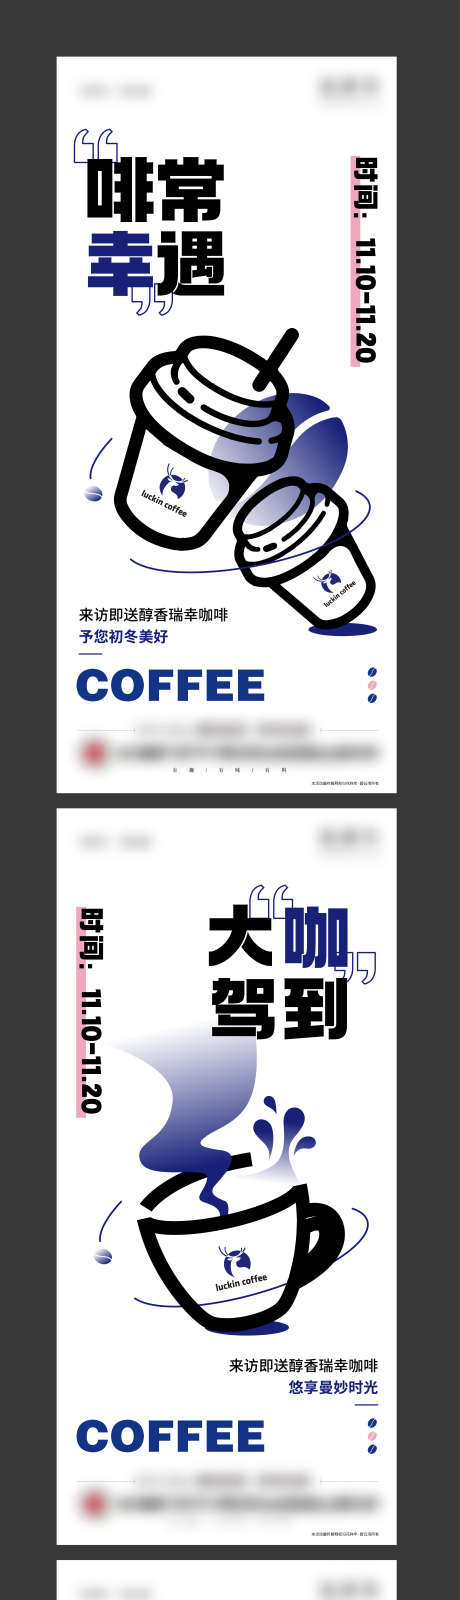 地产咖啡活动海报_源文件下载_AI格式_4228X21446像素-系列,创意,大咖驾到,咖啡,地产活动,海报-作品编号:2023052011326786-源文件库-ywjfx.cn